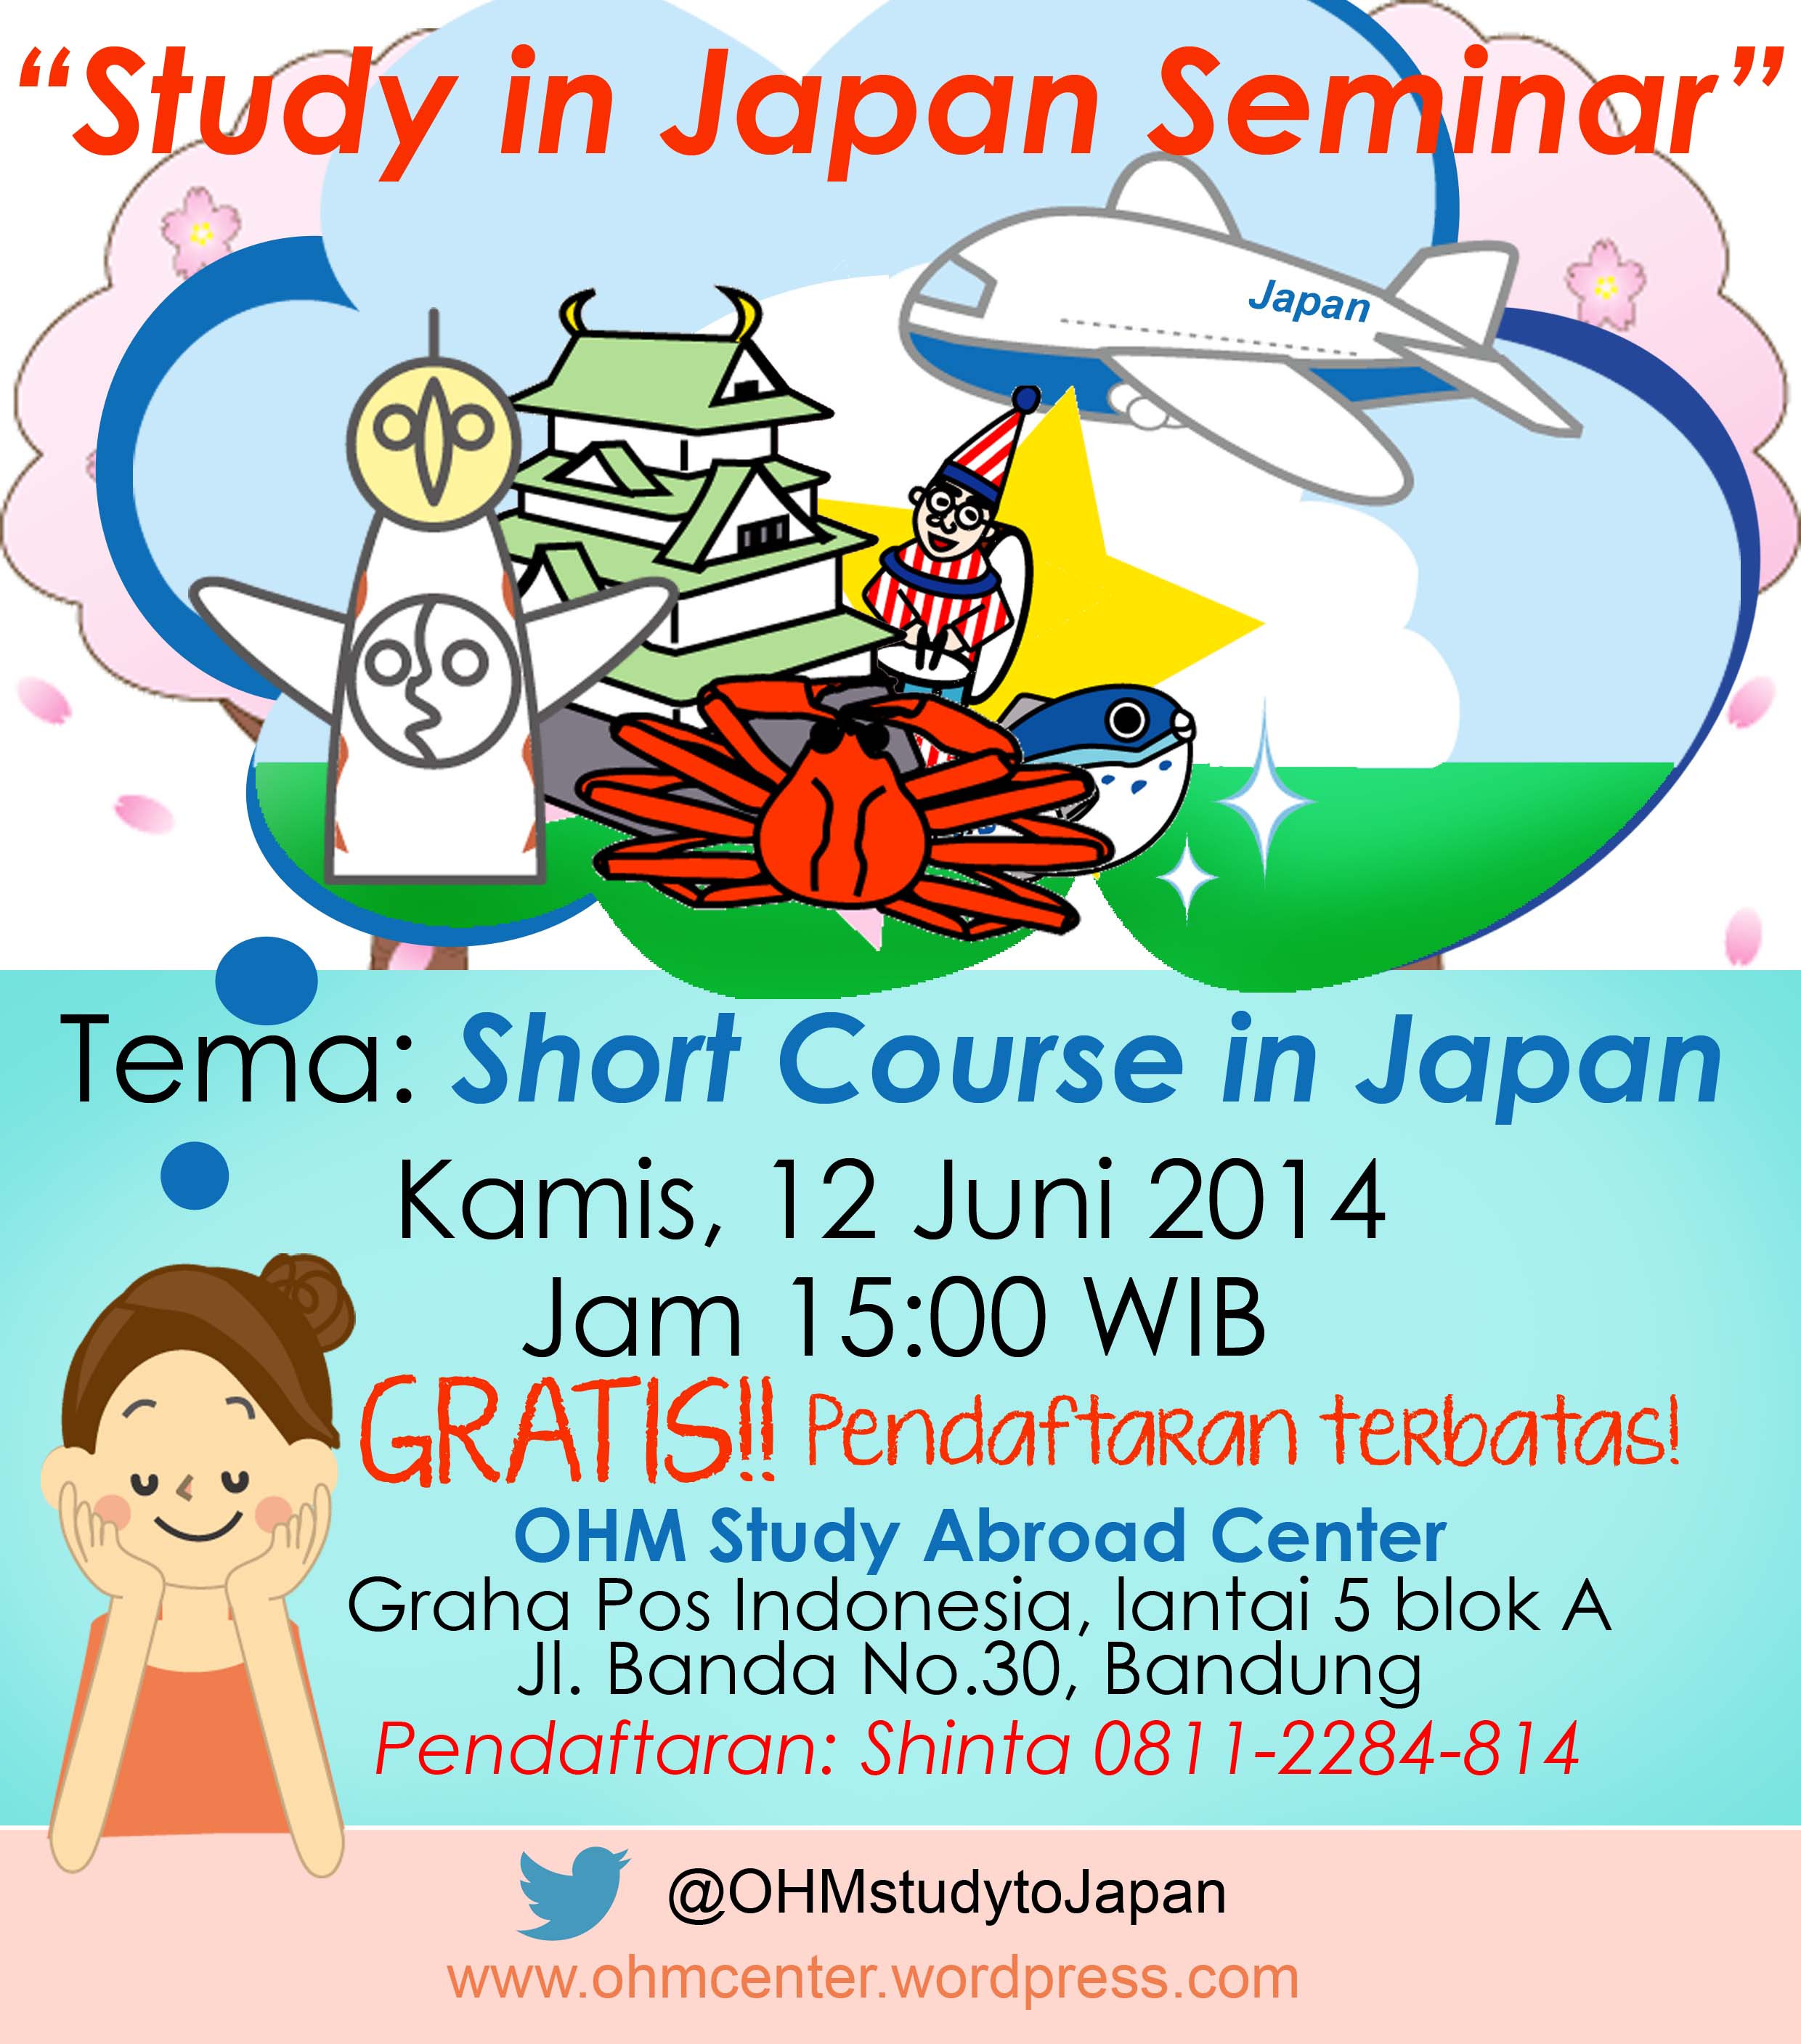 Study in Japan Seminar (Kamis, 12 Juni 2014)